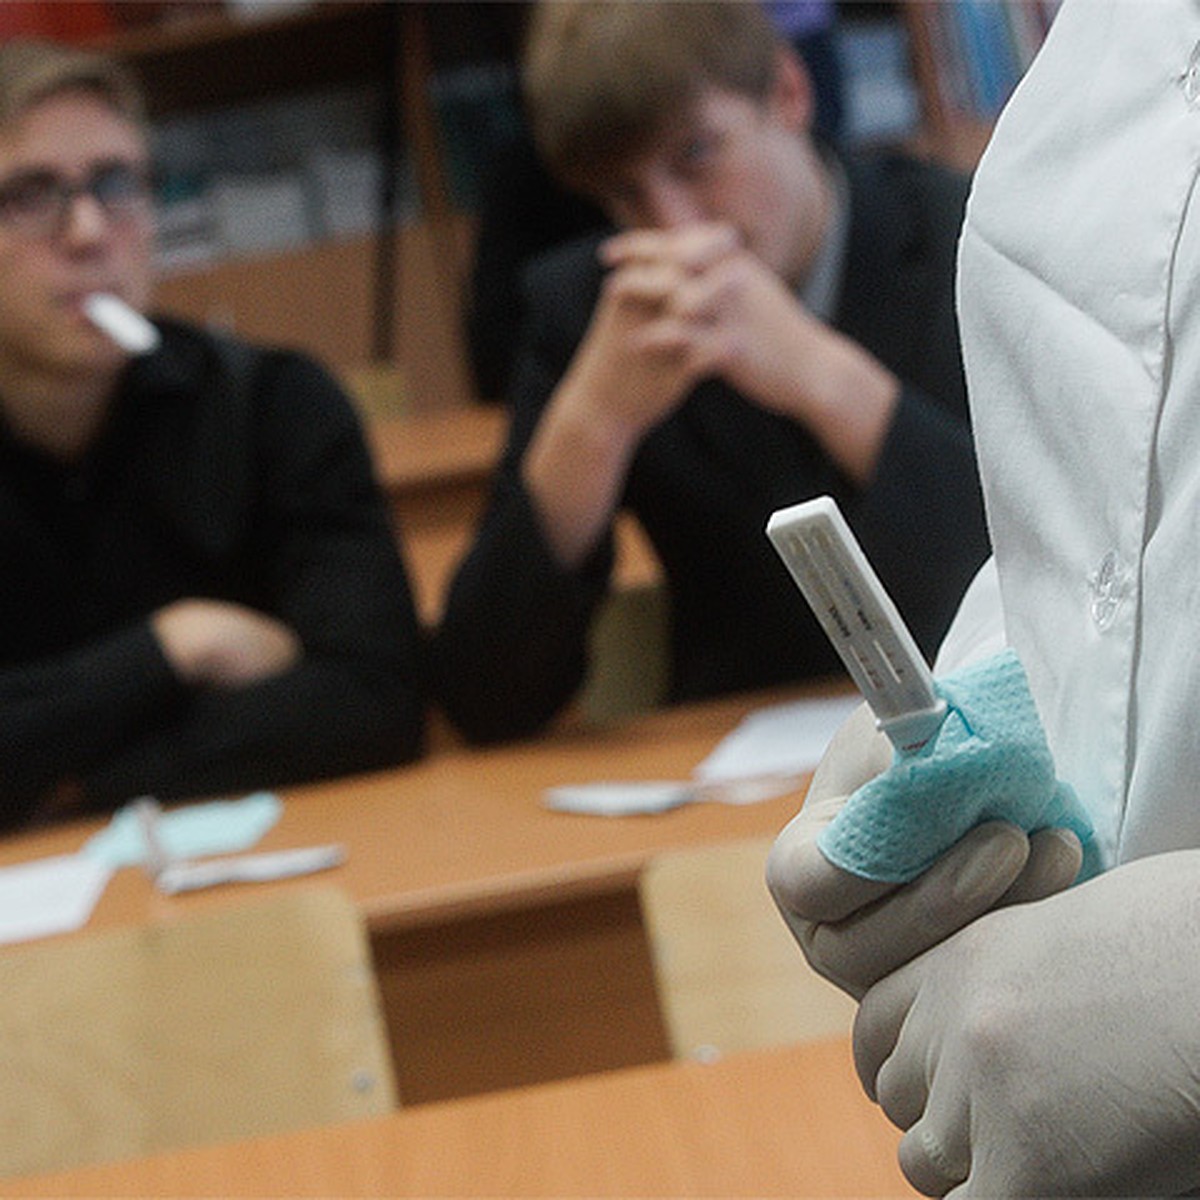 Дети и наркотики тест конопля в оренбургской области